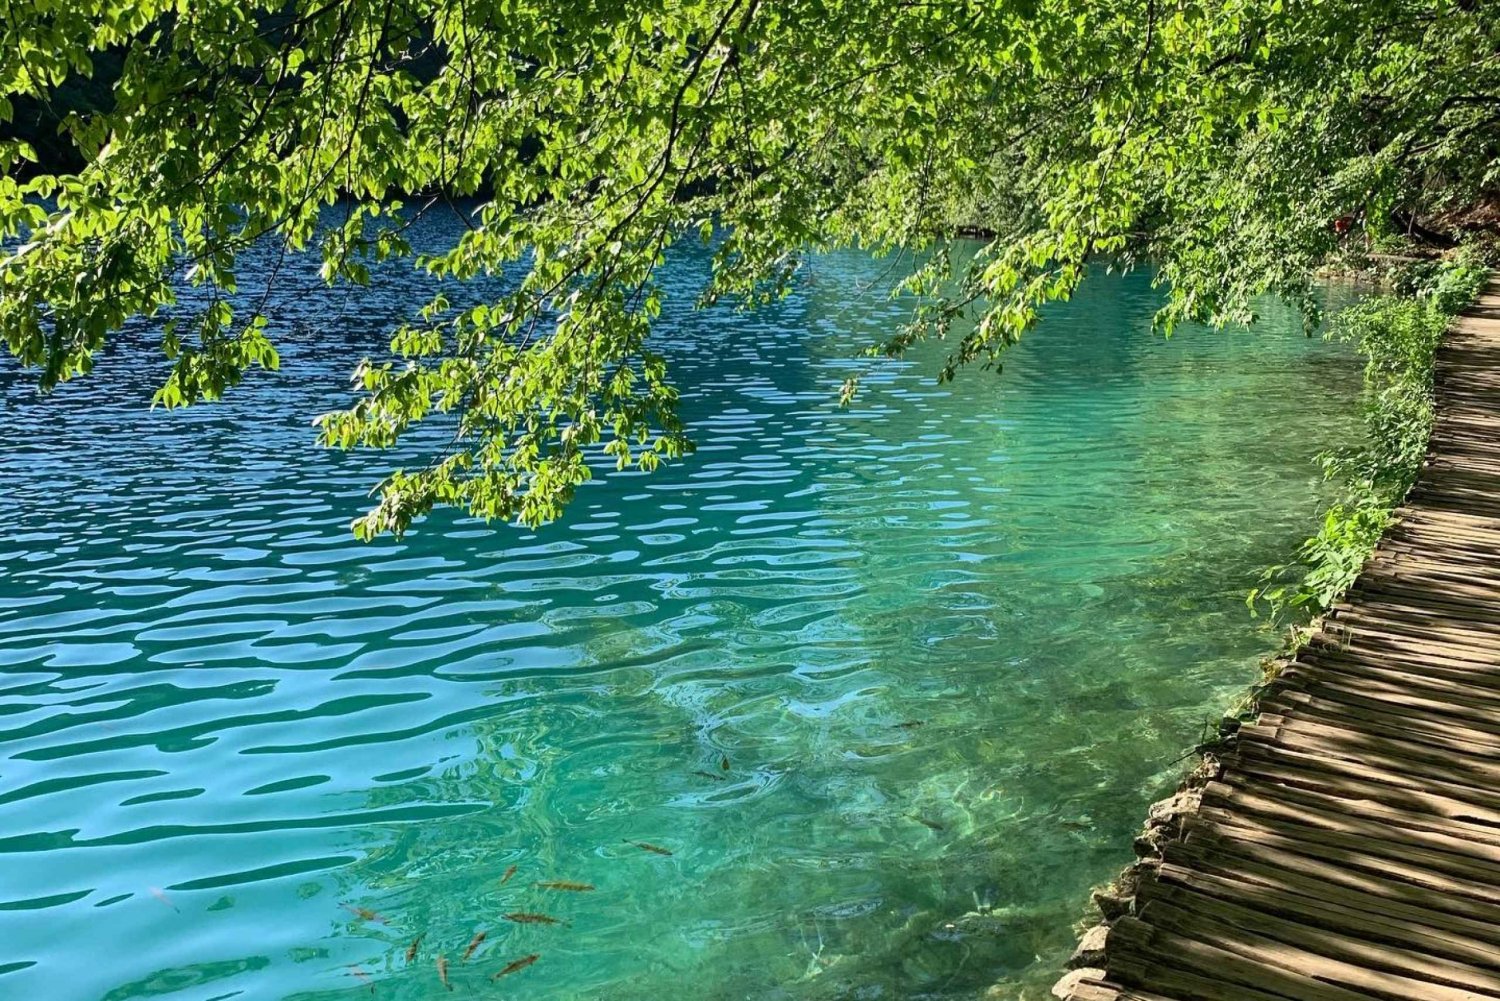 Half day tour around Plitvice Lakes